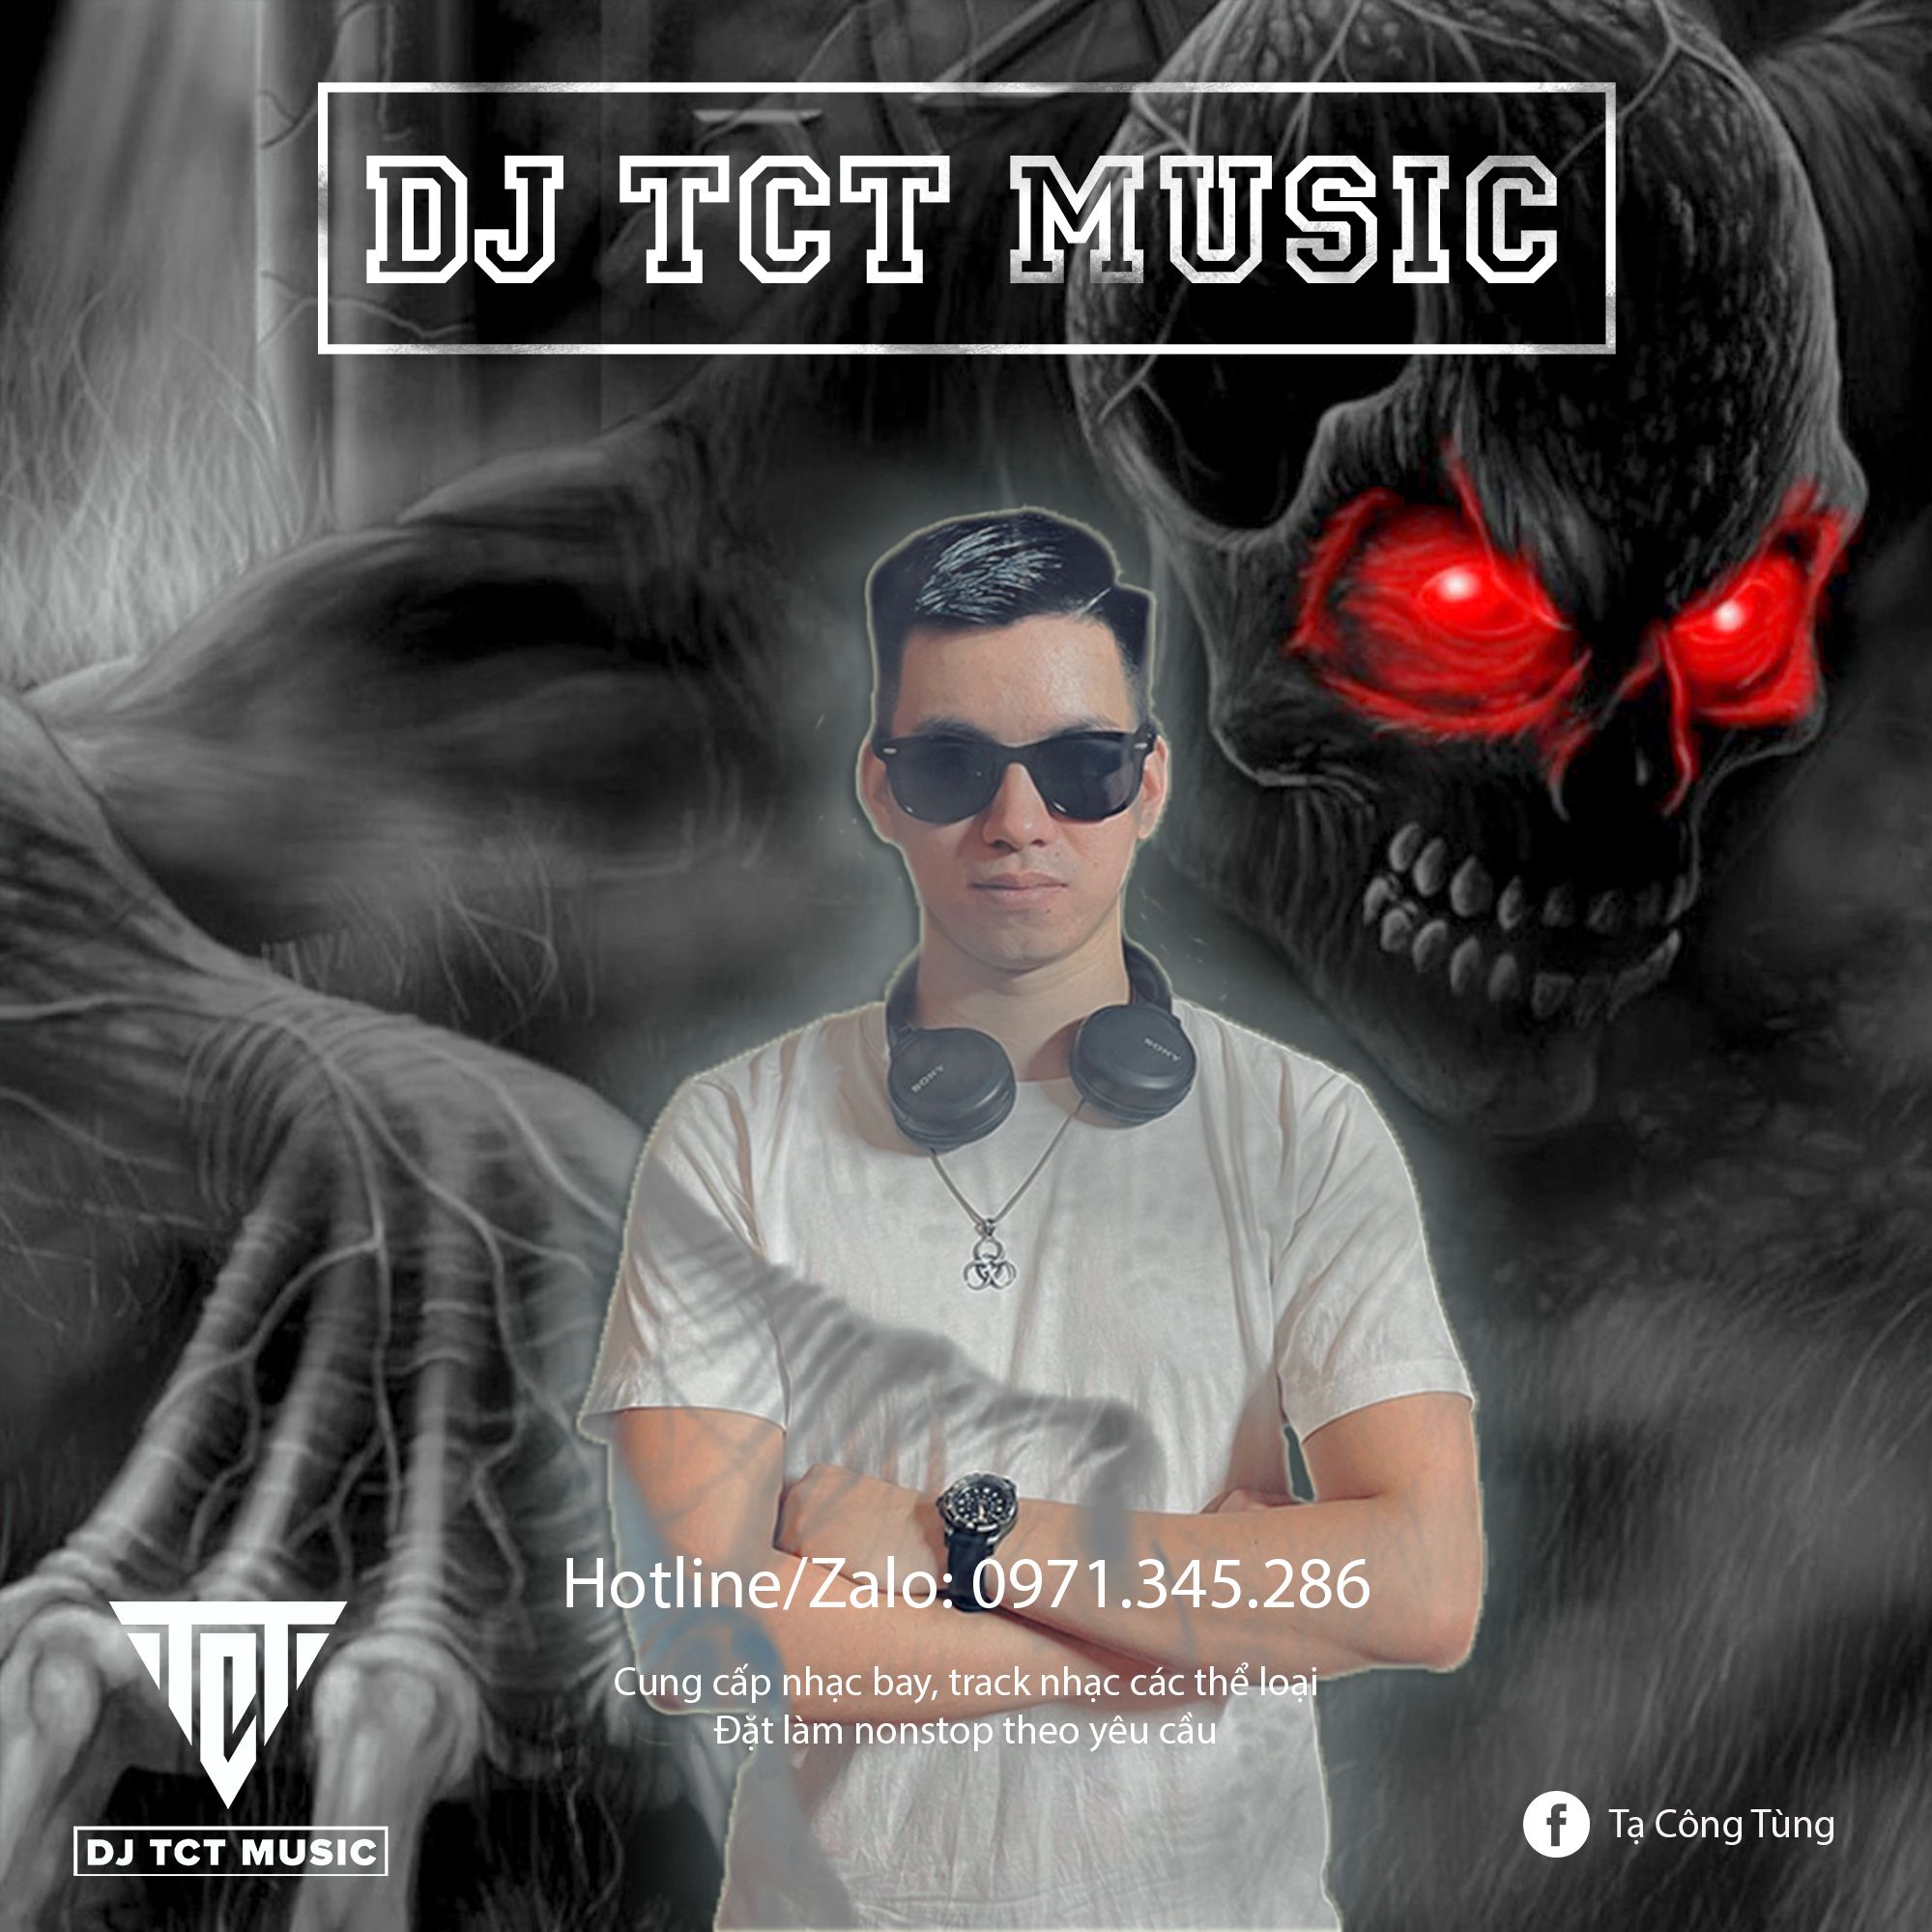 ទាញយក NONSTOP VIỆT MIX LỜI NGUYỀN 2022 .WAV / DJ TCT MUSIC 0971345286 / TRACK NHẠC BAY PHÒNG HAY NHẤT 2022